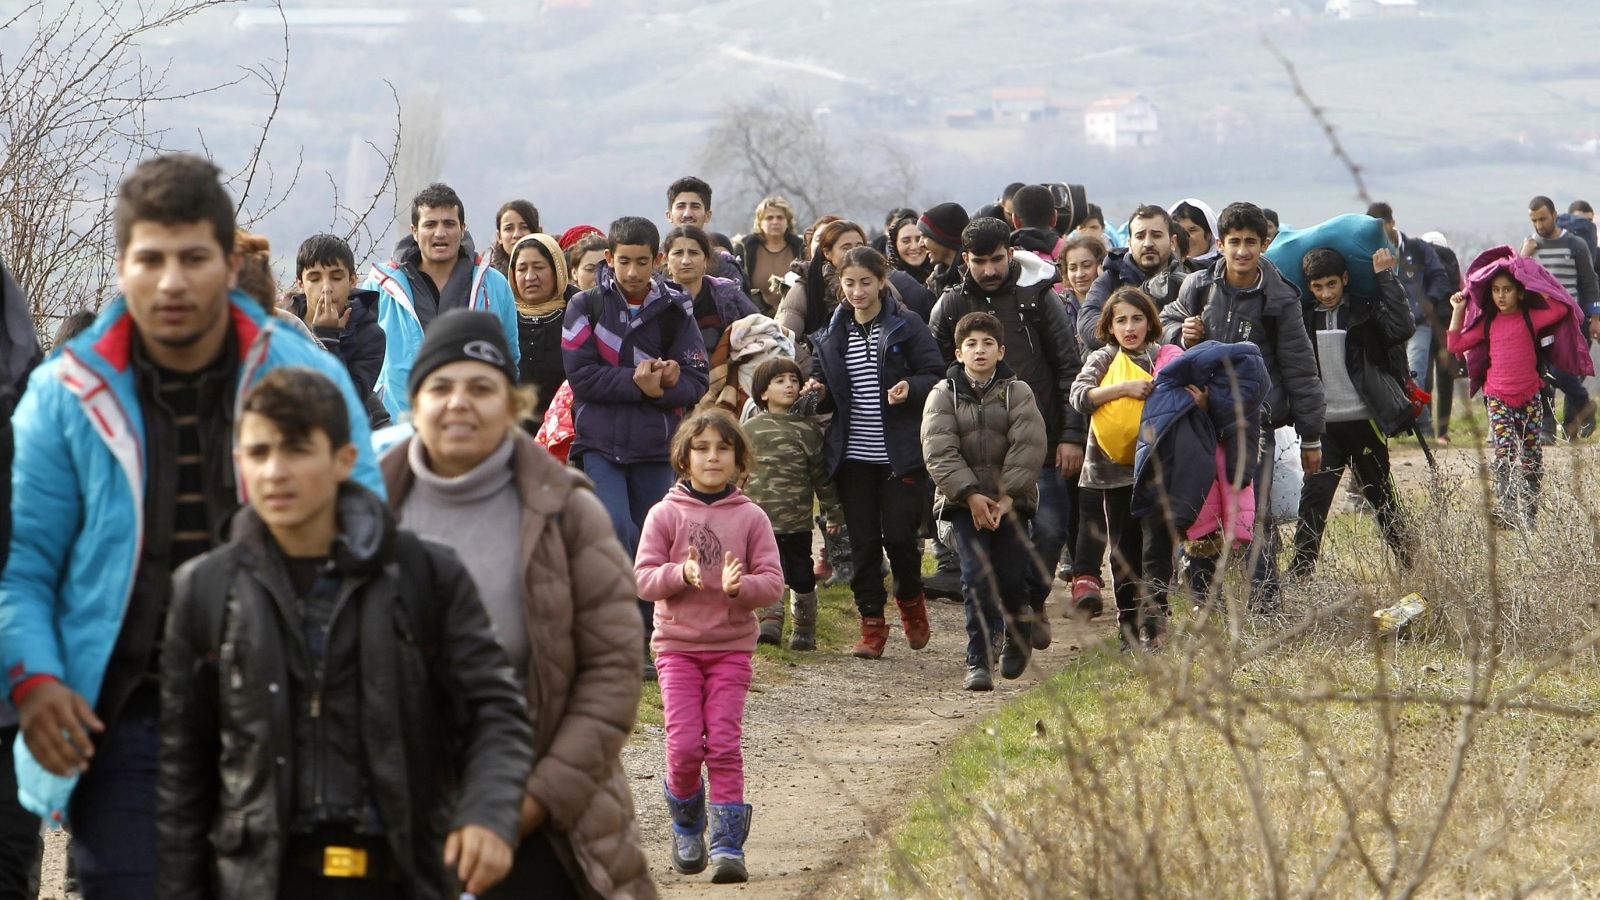 لاجئون أغلبيتهم من الأفغان يعودون إلى مقدونيا بعد رفض صربيا السماح لهم بالمرور (أسوشيتد برس)